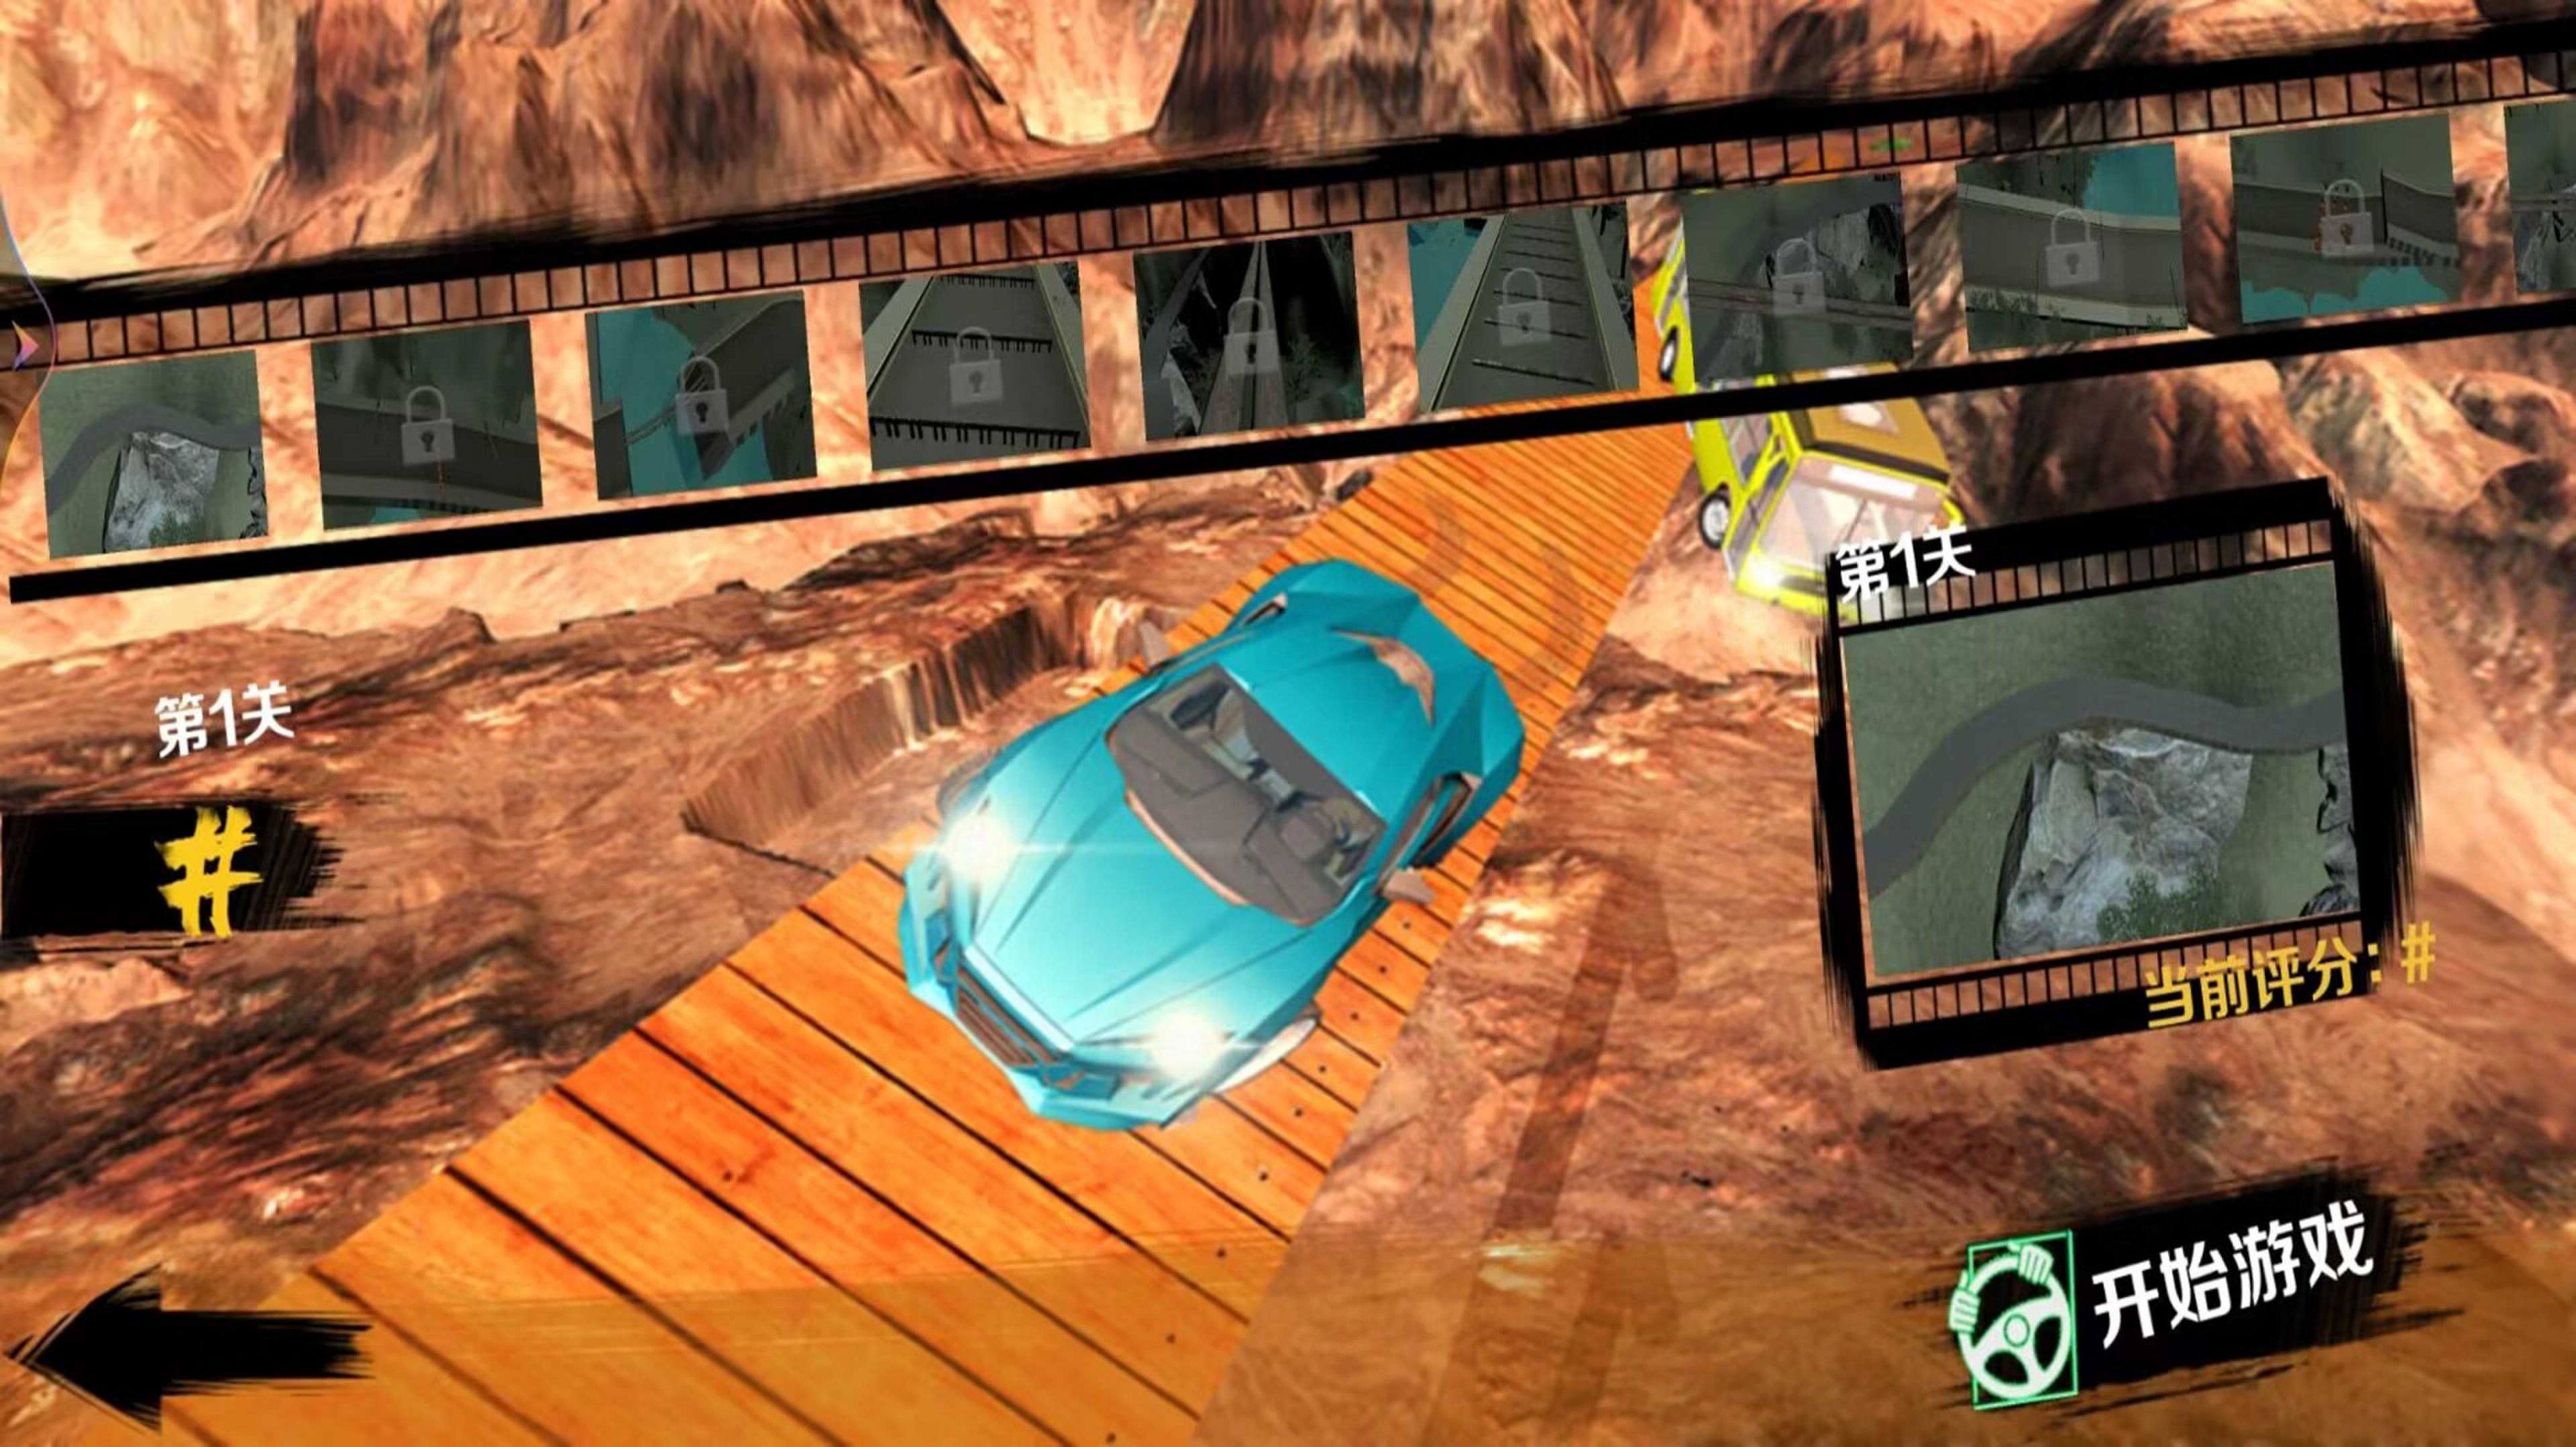 车祸合辑模拟游戏下载,车祸合辑模拟游戏官方最新版 v1.9 - 浏览器家园